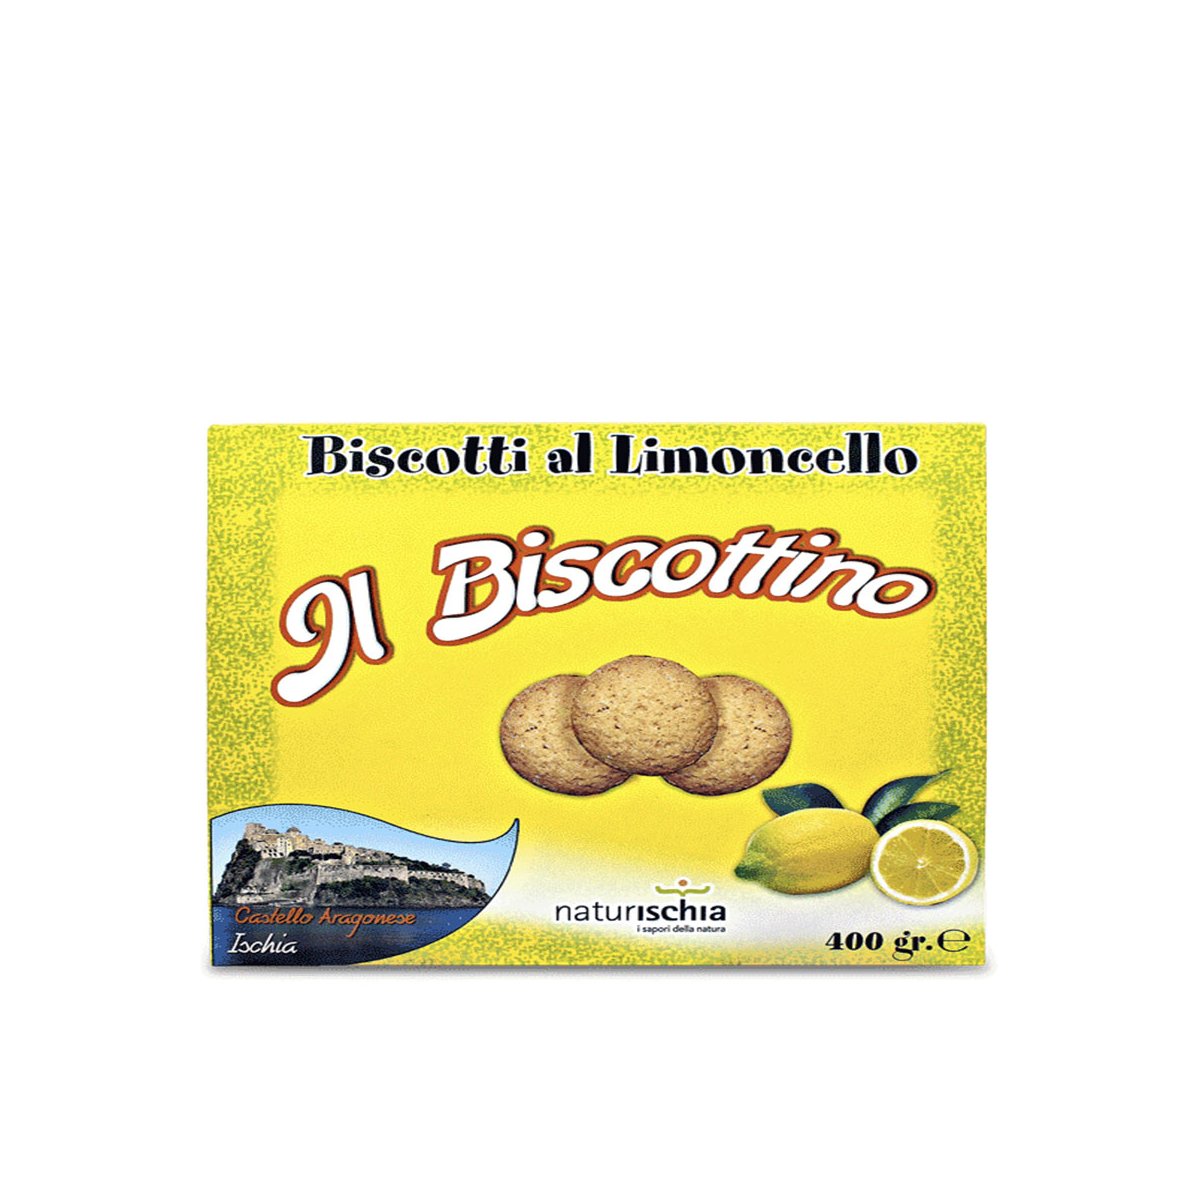 Biscotti al limone "Il Biscottino" 400 gr